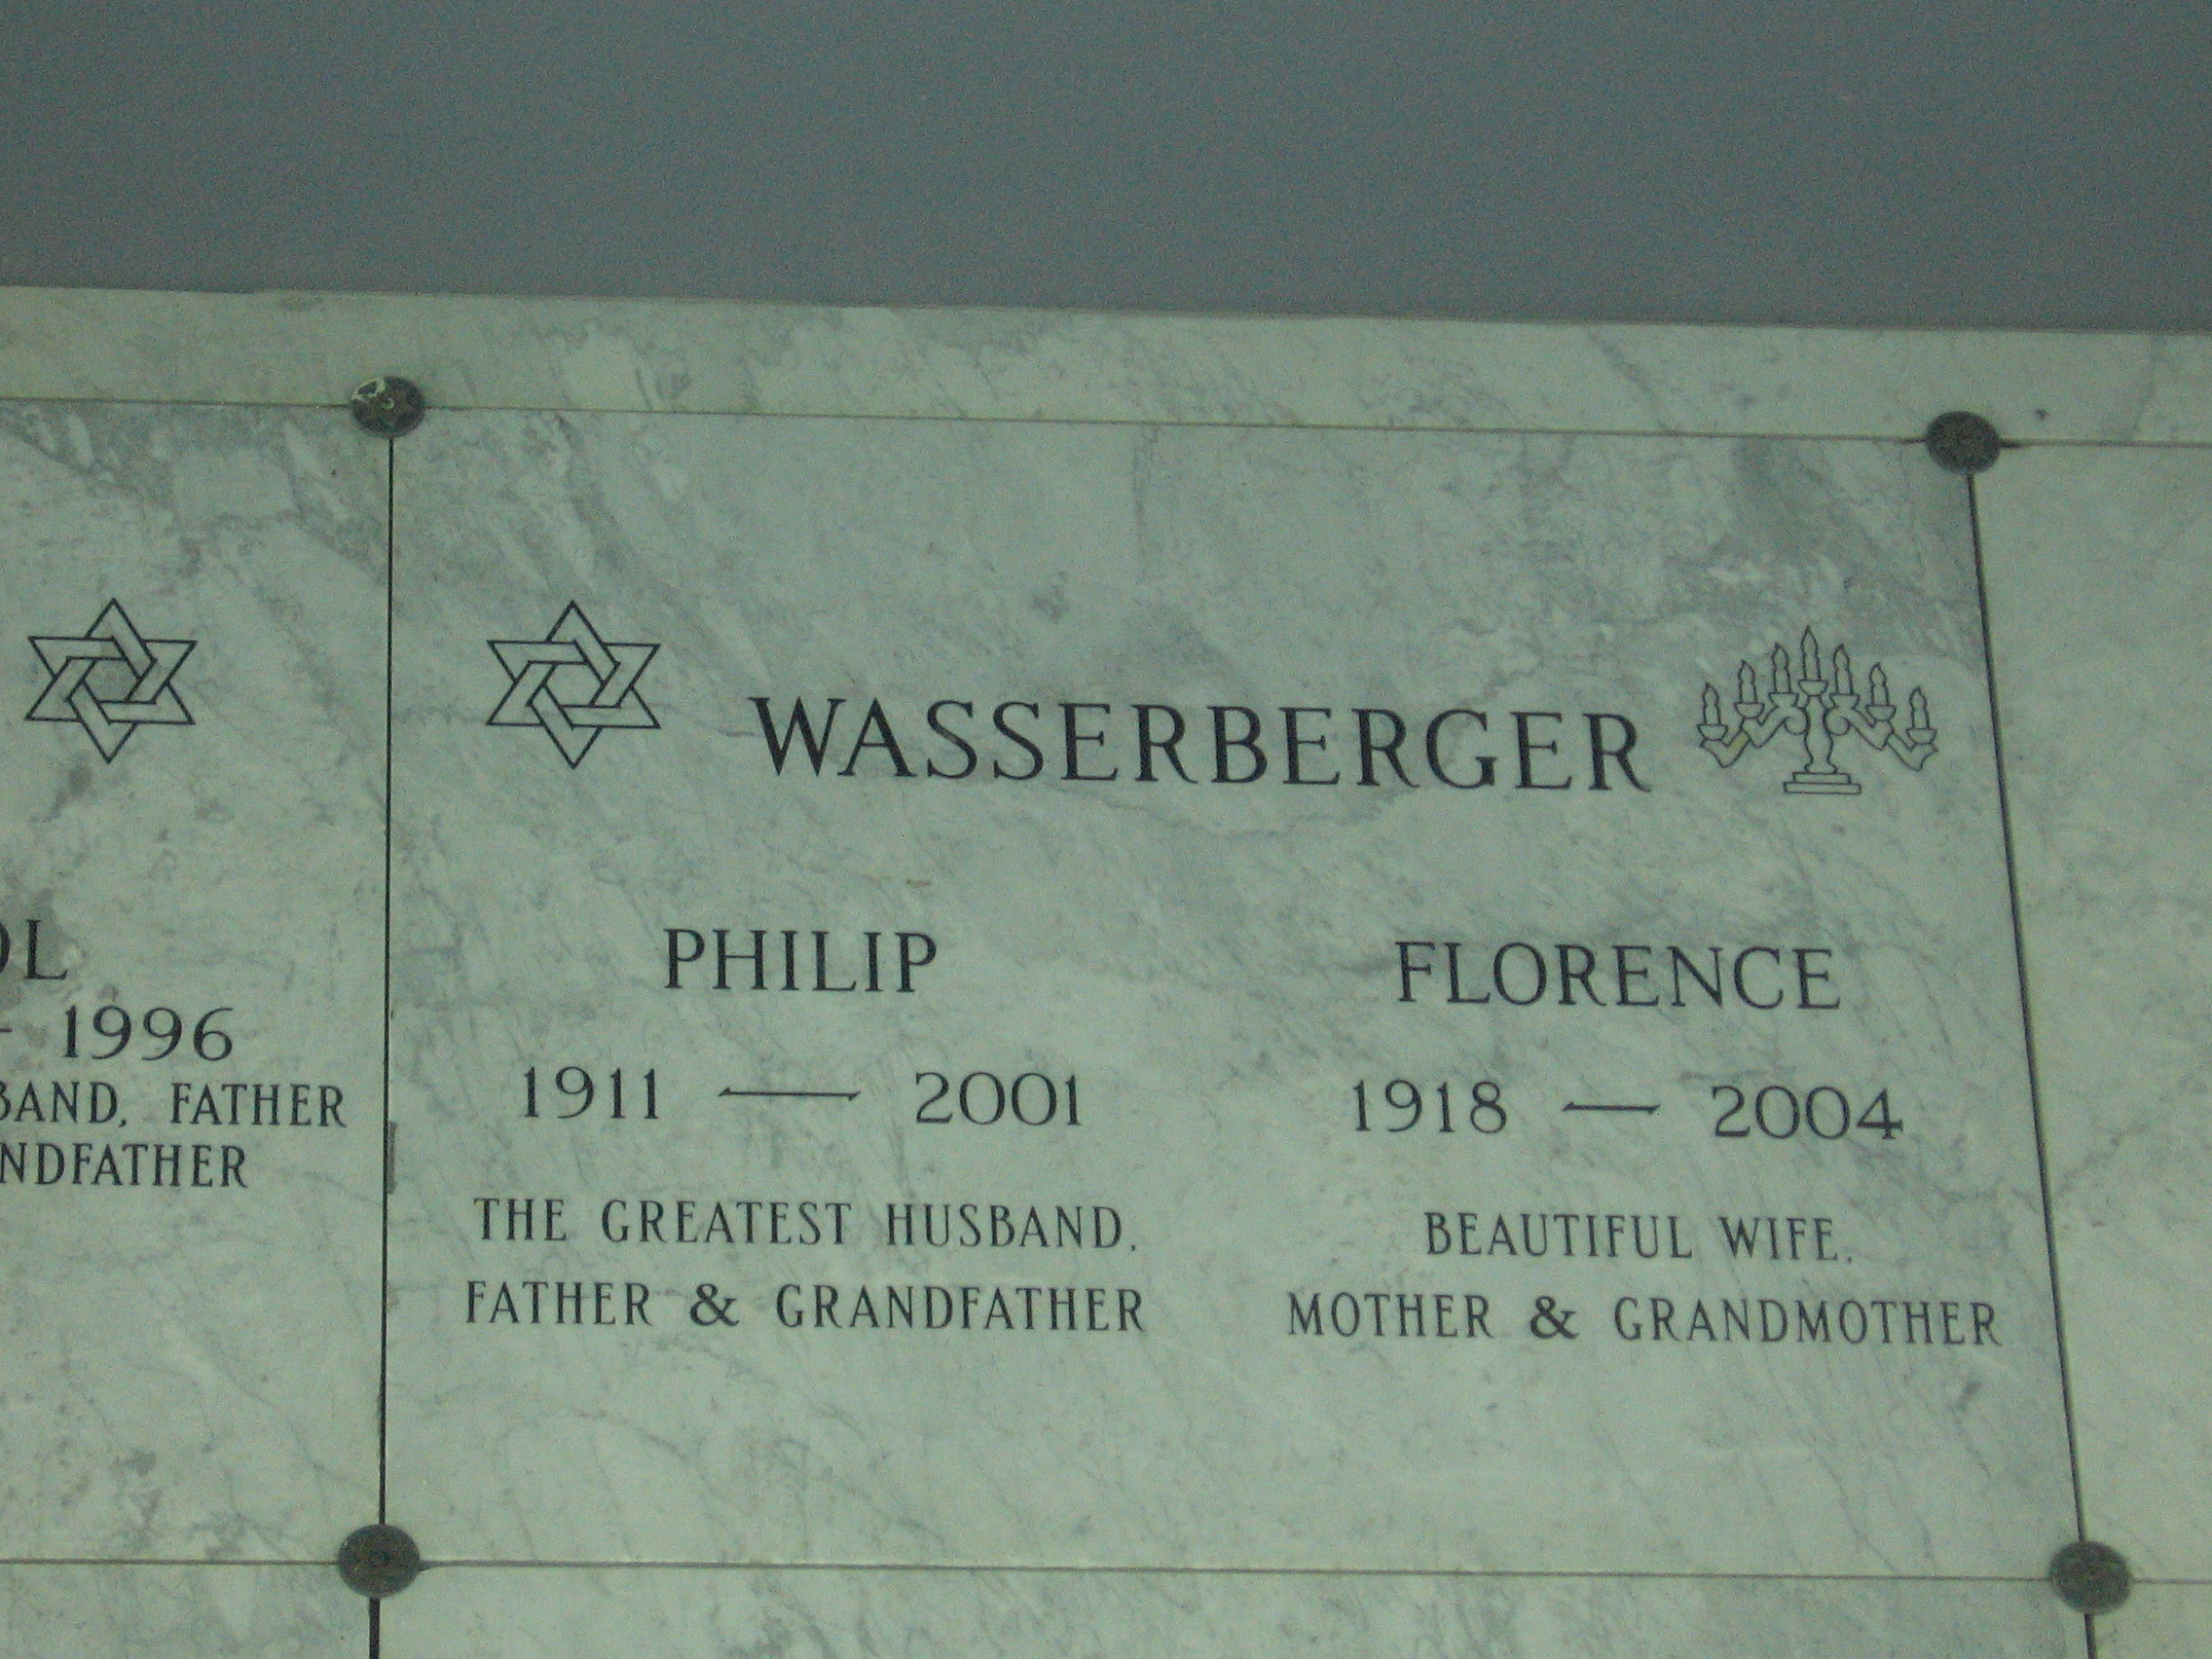 Philip Wasserberger